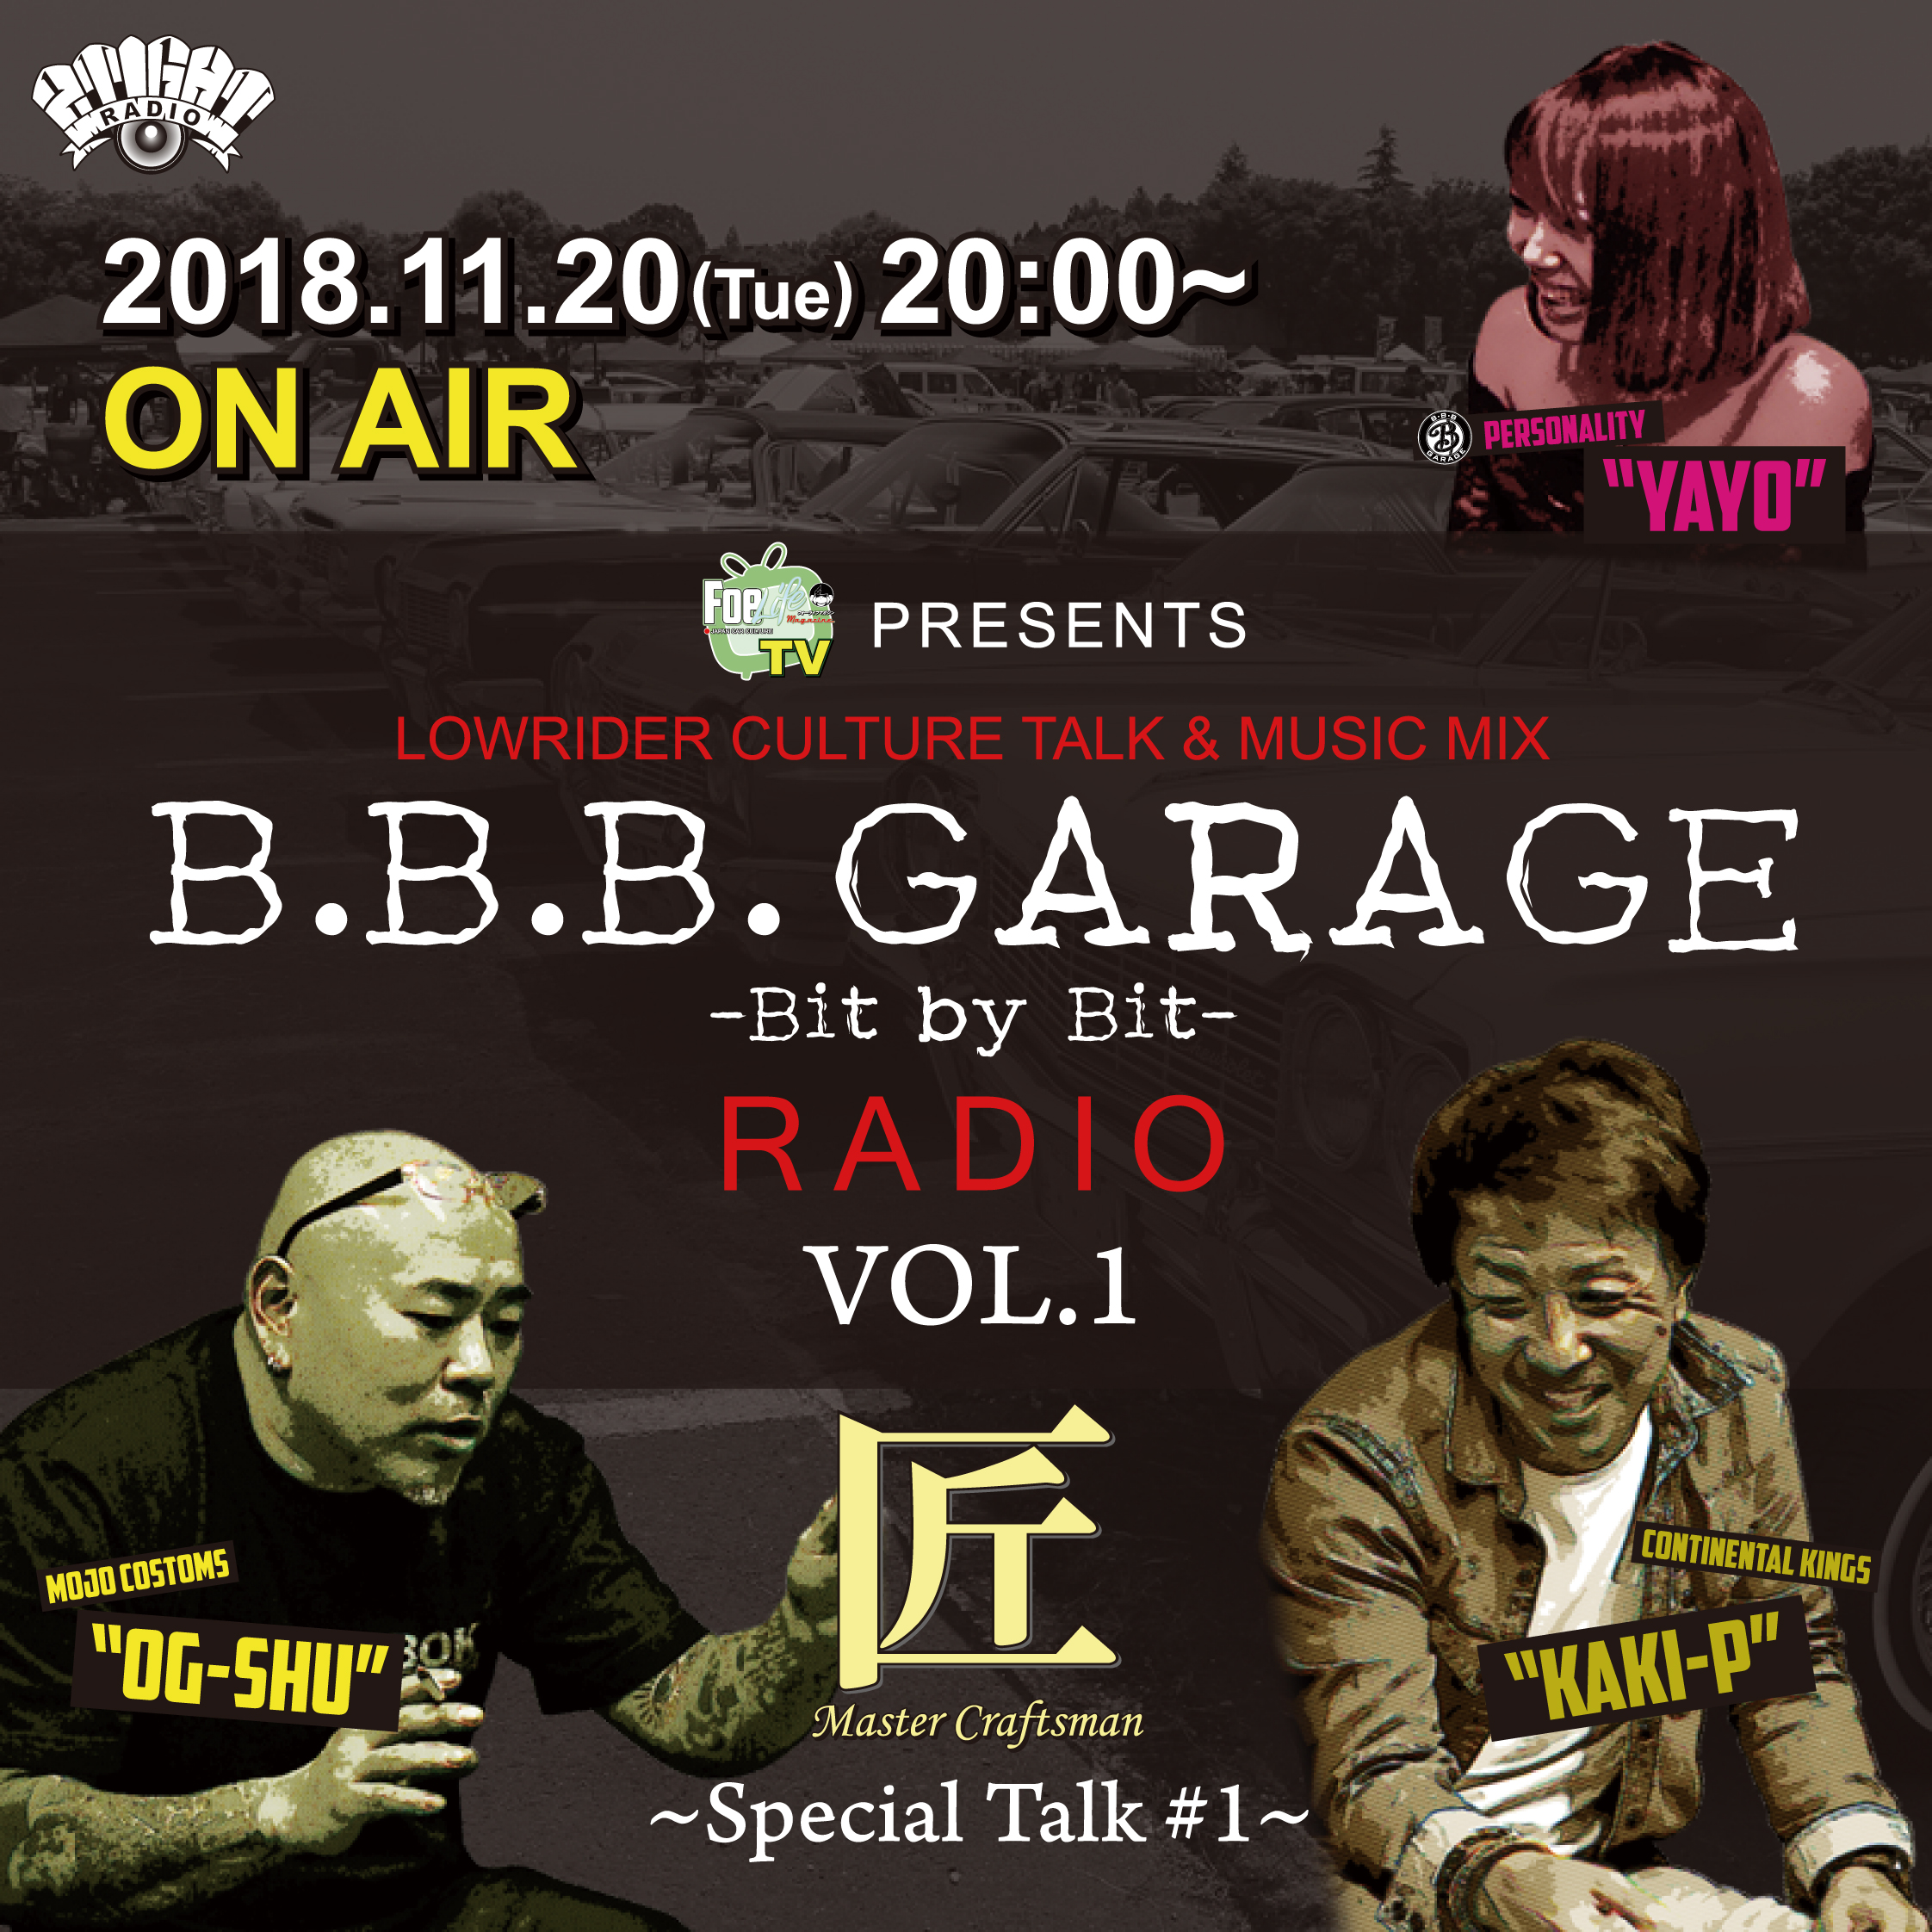 『B.B.B. GARAGE』の冠ラジオ番組が放送されます！